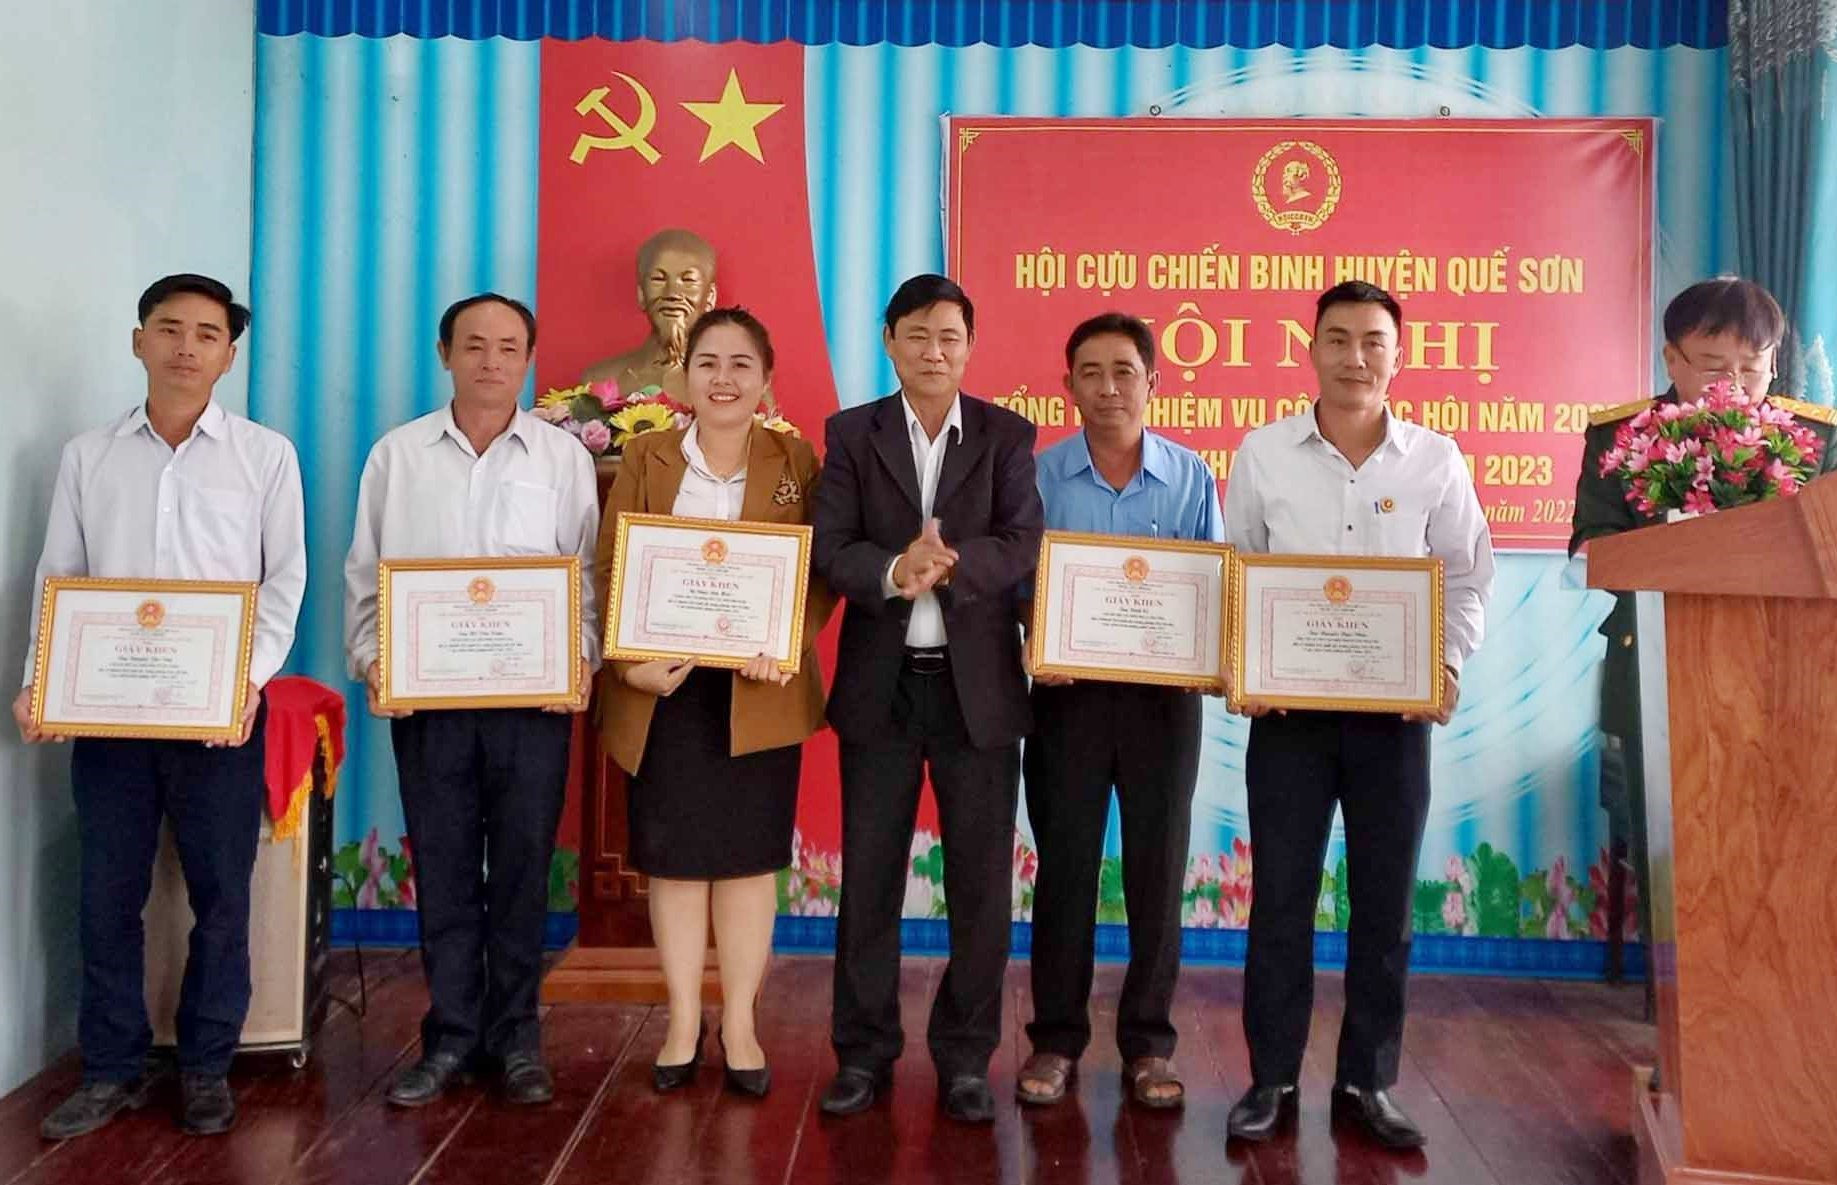 UBND huyện Quế Sơn khen thưởng các cá nhân có thành tích xuất sắc trong phong trào thi đua “CCB gương mẫu“. Ảnh: D.T